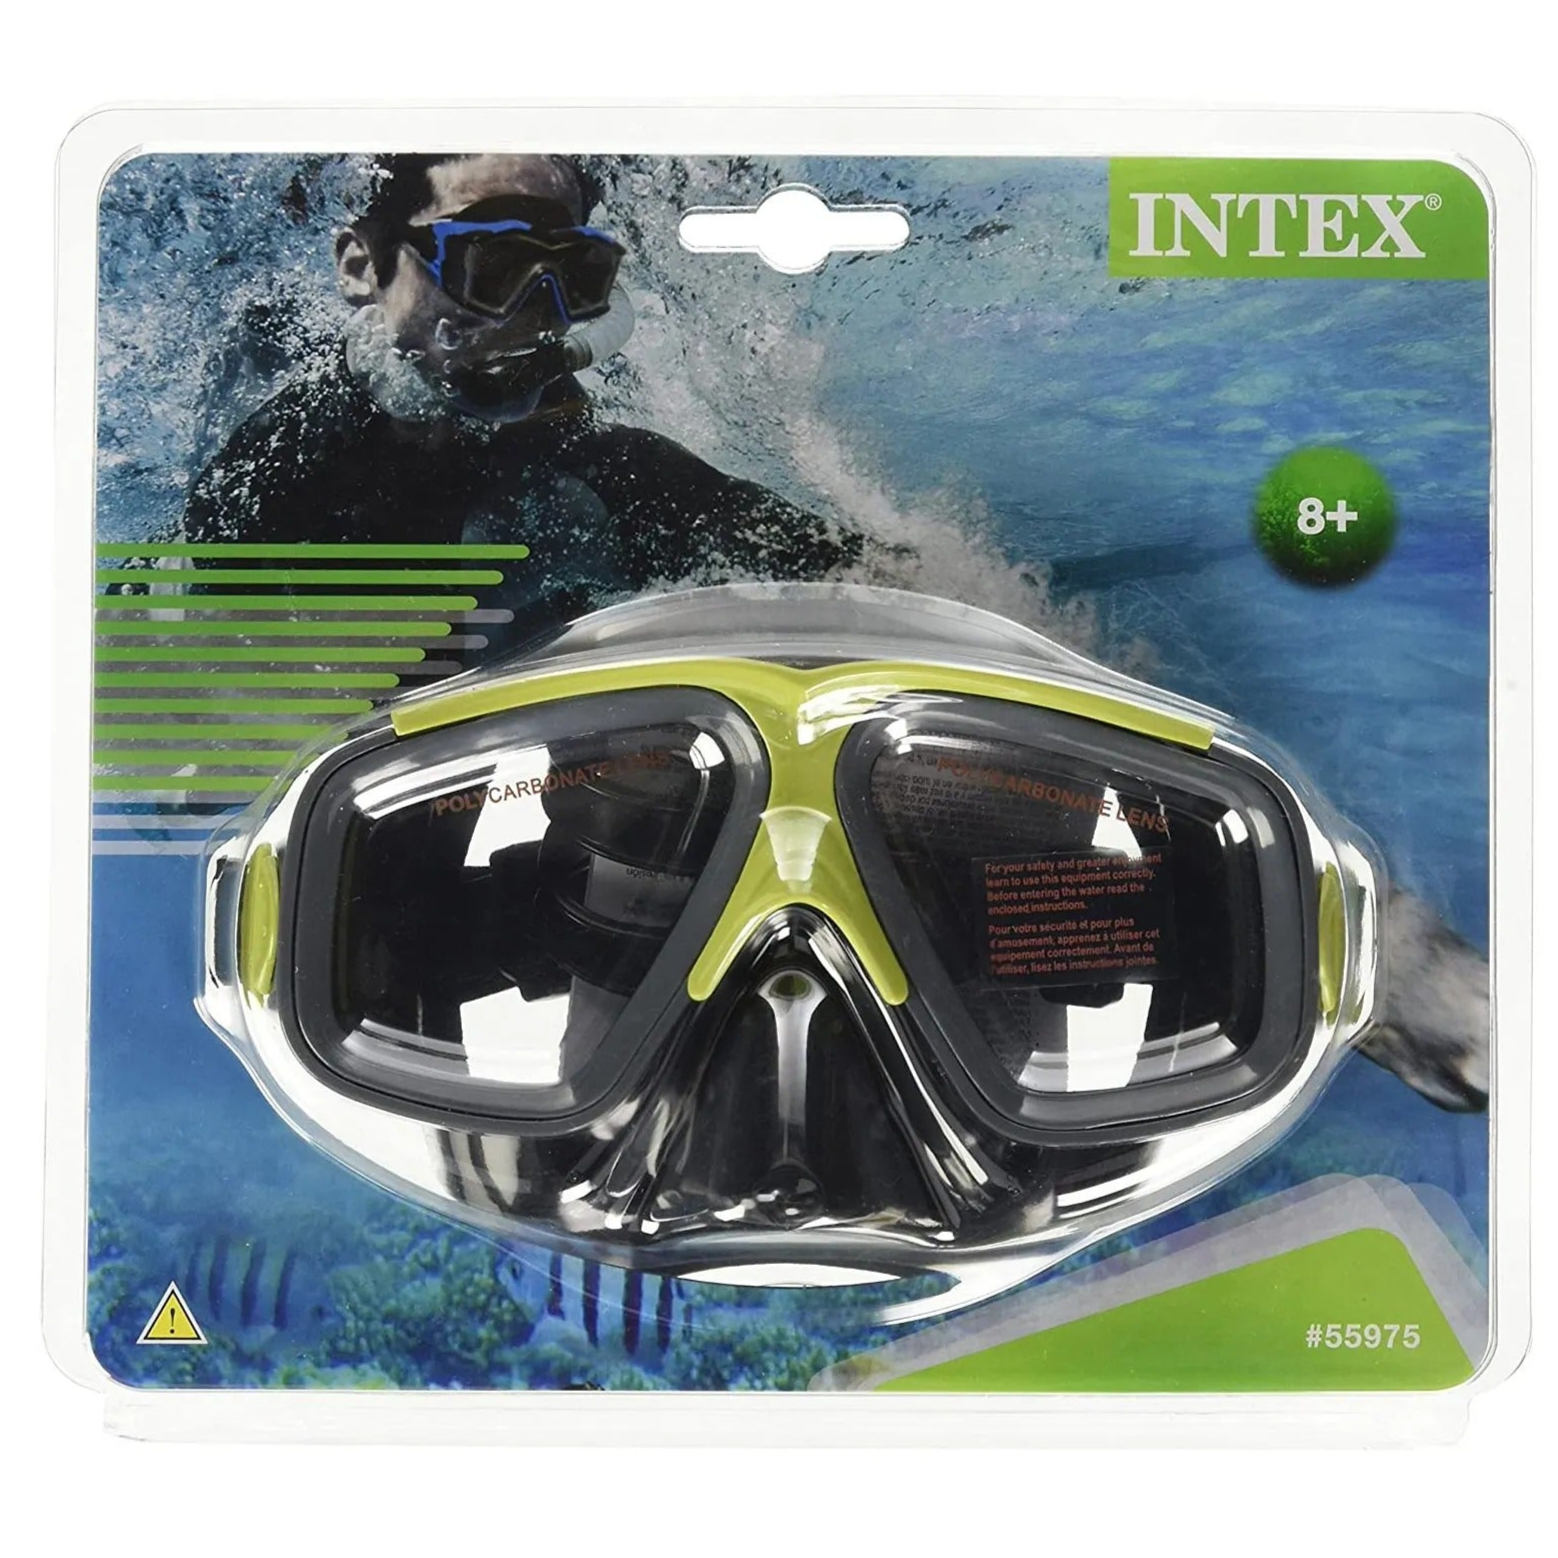 Intex - Surf Rider Masks - Green and Black